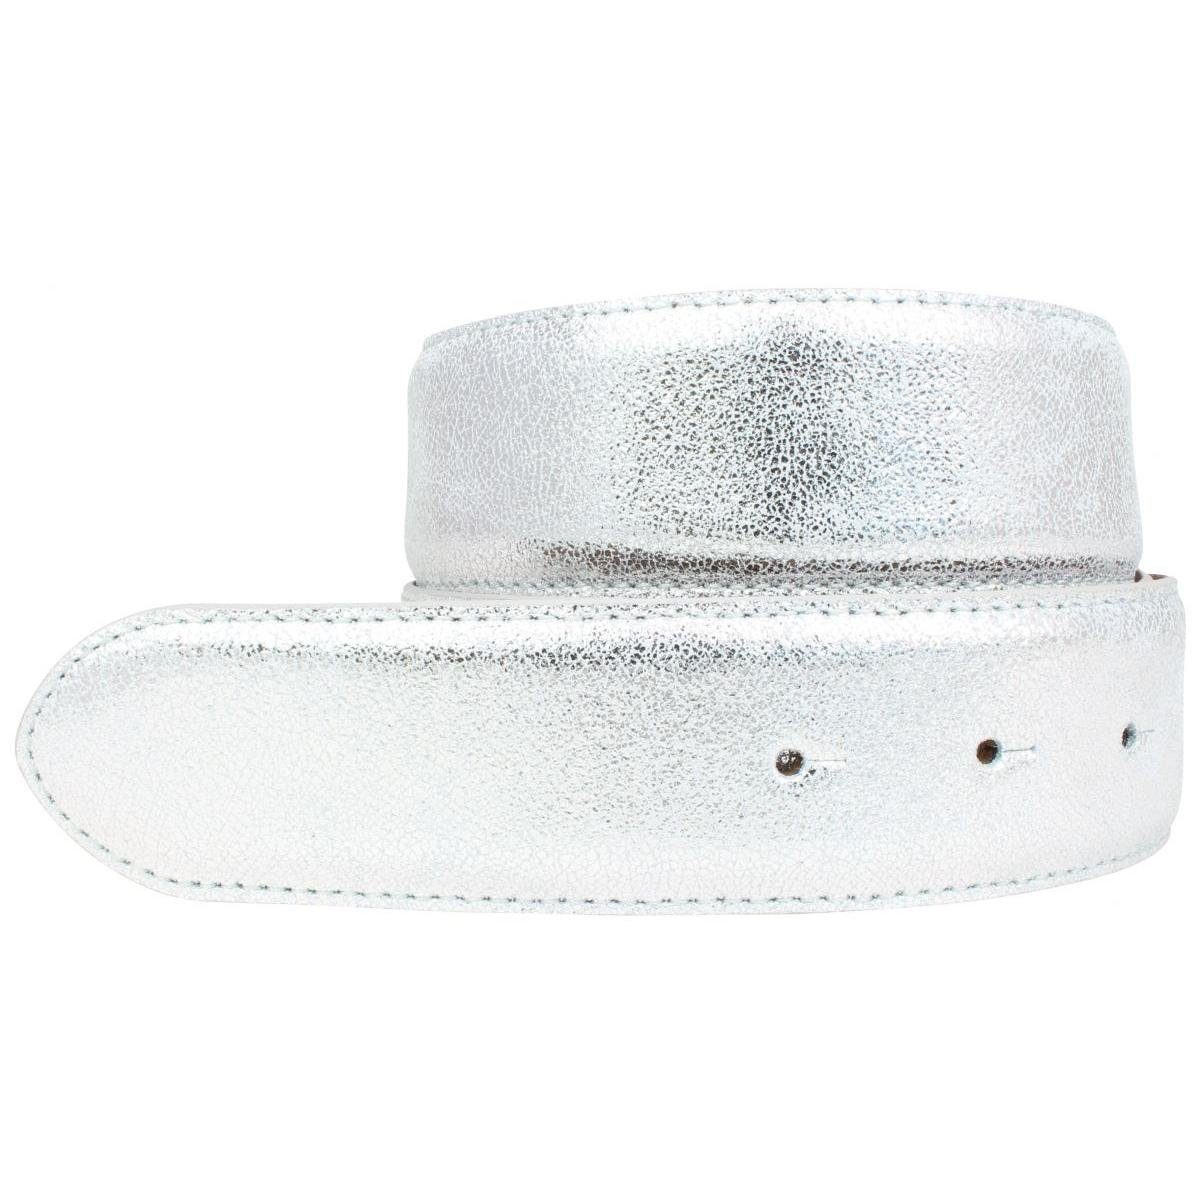 Silber - Ledergürtel Metall-Optik Leder 4 Meta Echt Schnalle BELTINGER ohne Hochwertiger Gürtel cm